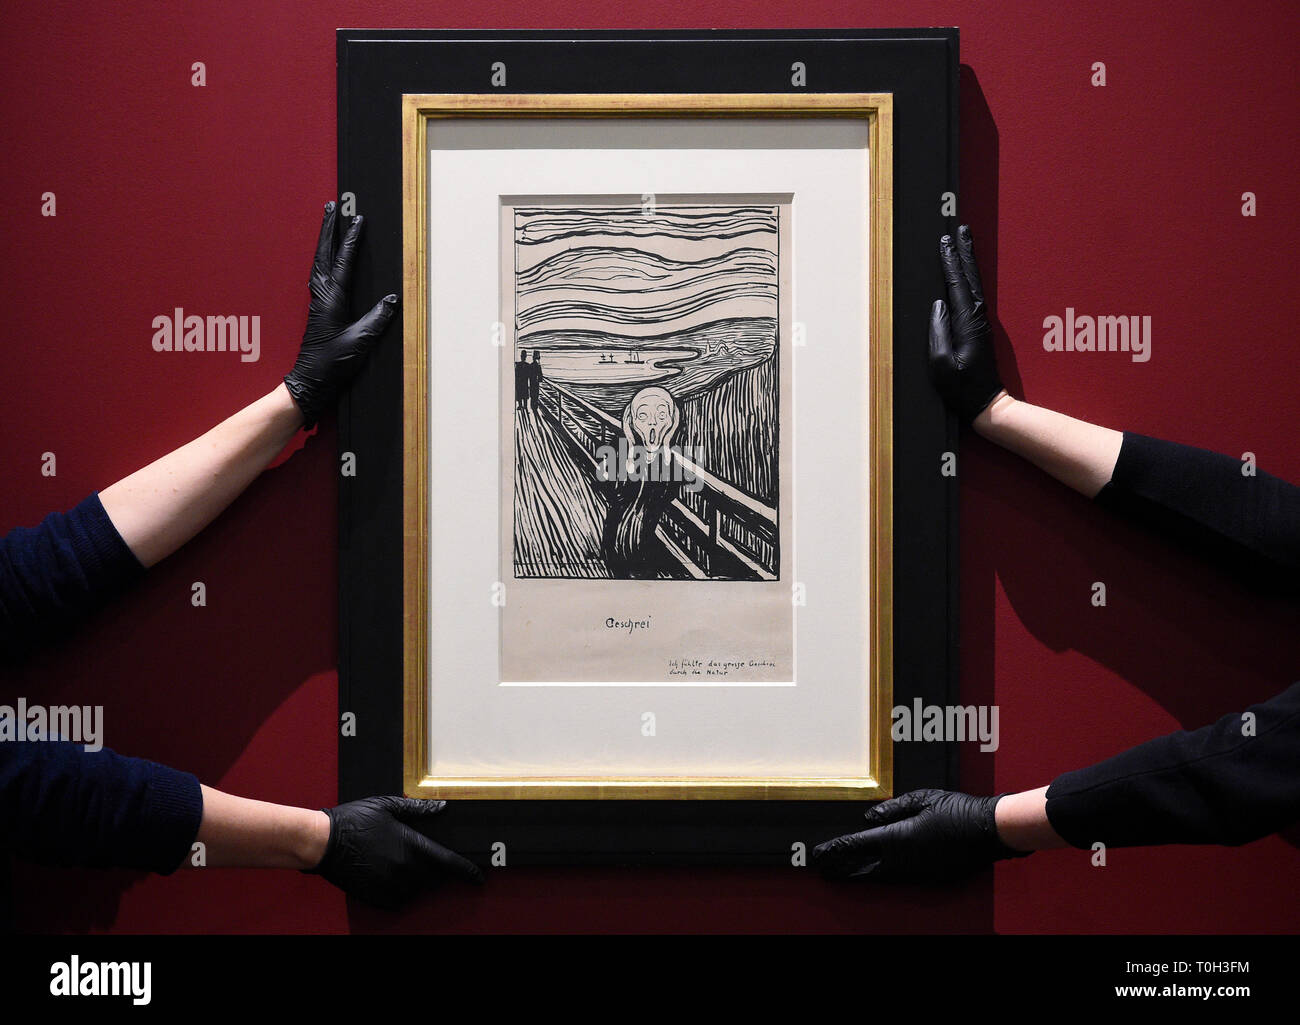 Les techniciens Galerie Installez le cri d'Edvard Munch au British Museum de Londres, avant l'ouverture d'Edvard Munch : Amour et romance, l'exposition qui se déroule du 11 avril au 21 juillet 2019. Banque D'Images